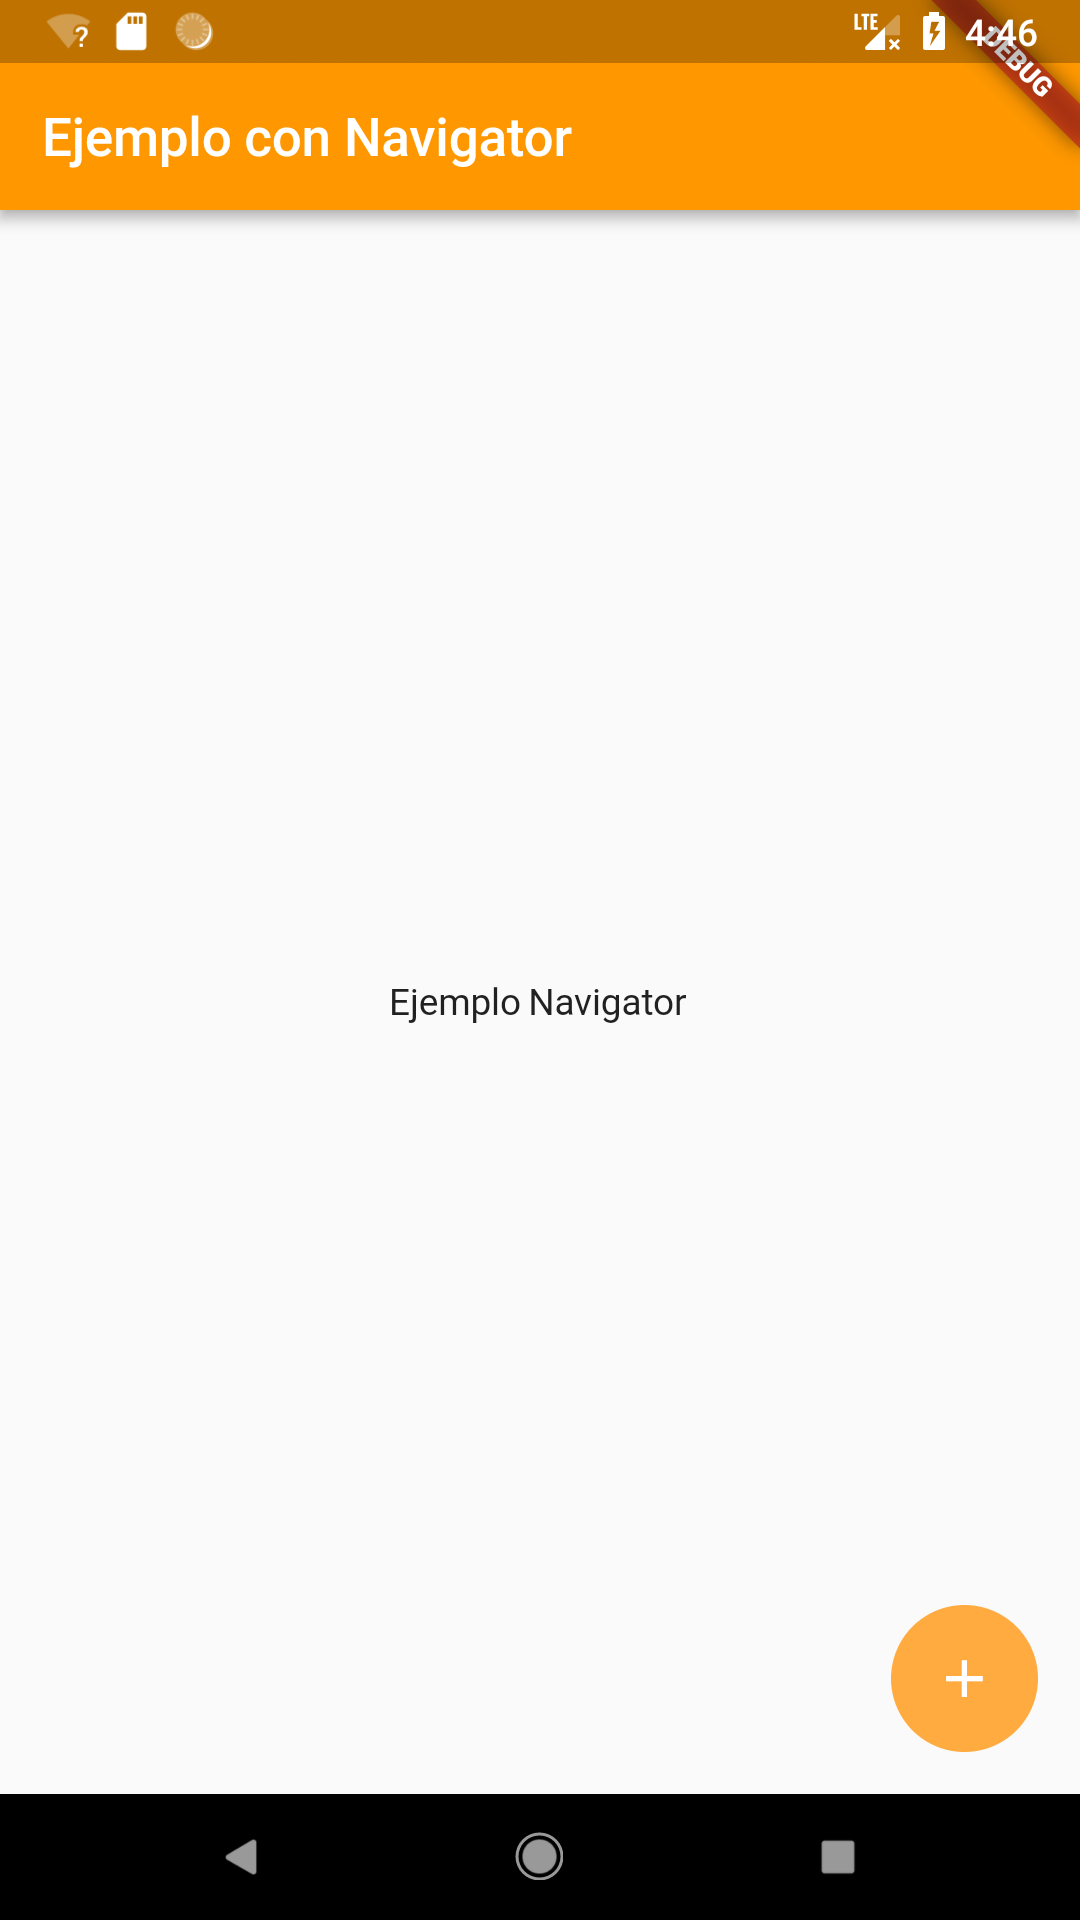 Pantalla inicial para el ejemplo con Navigator